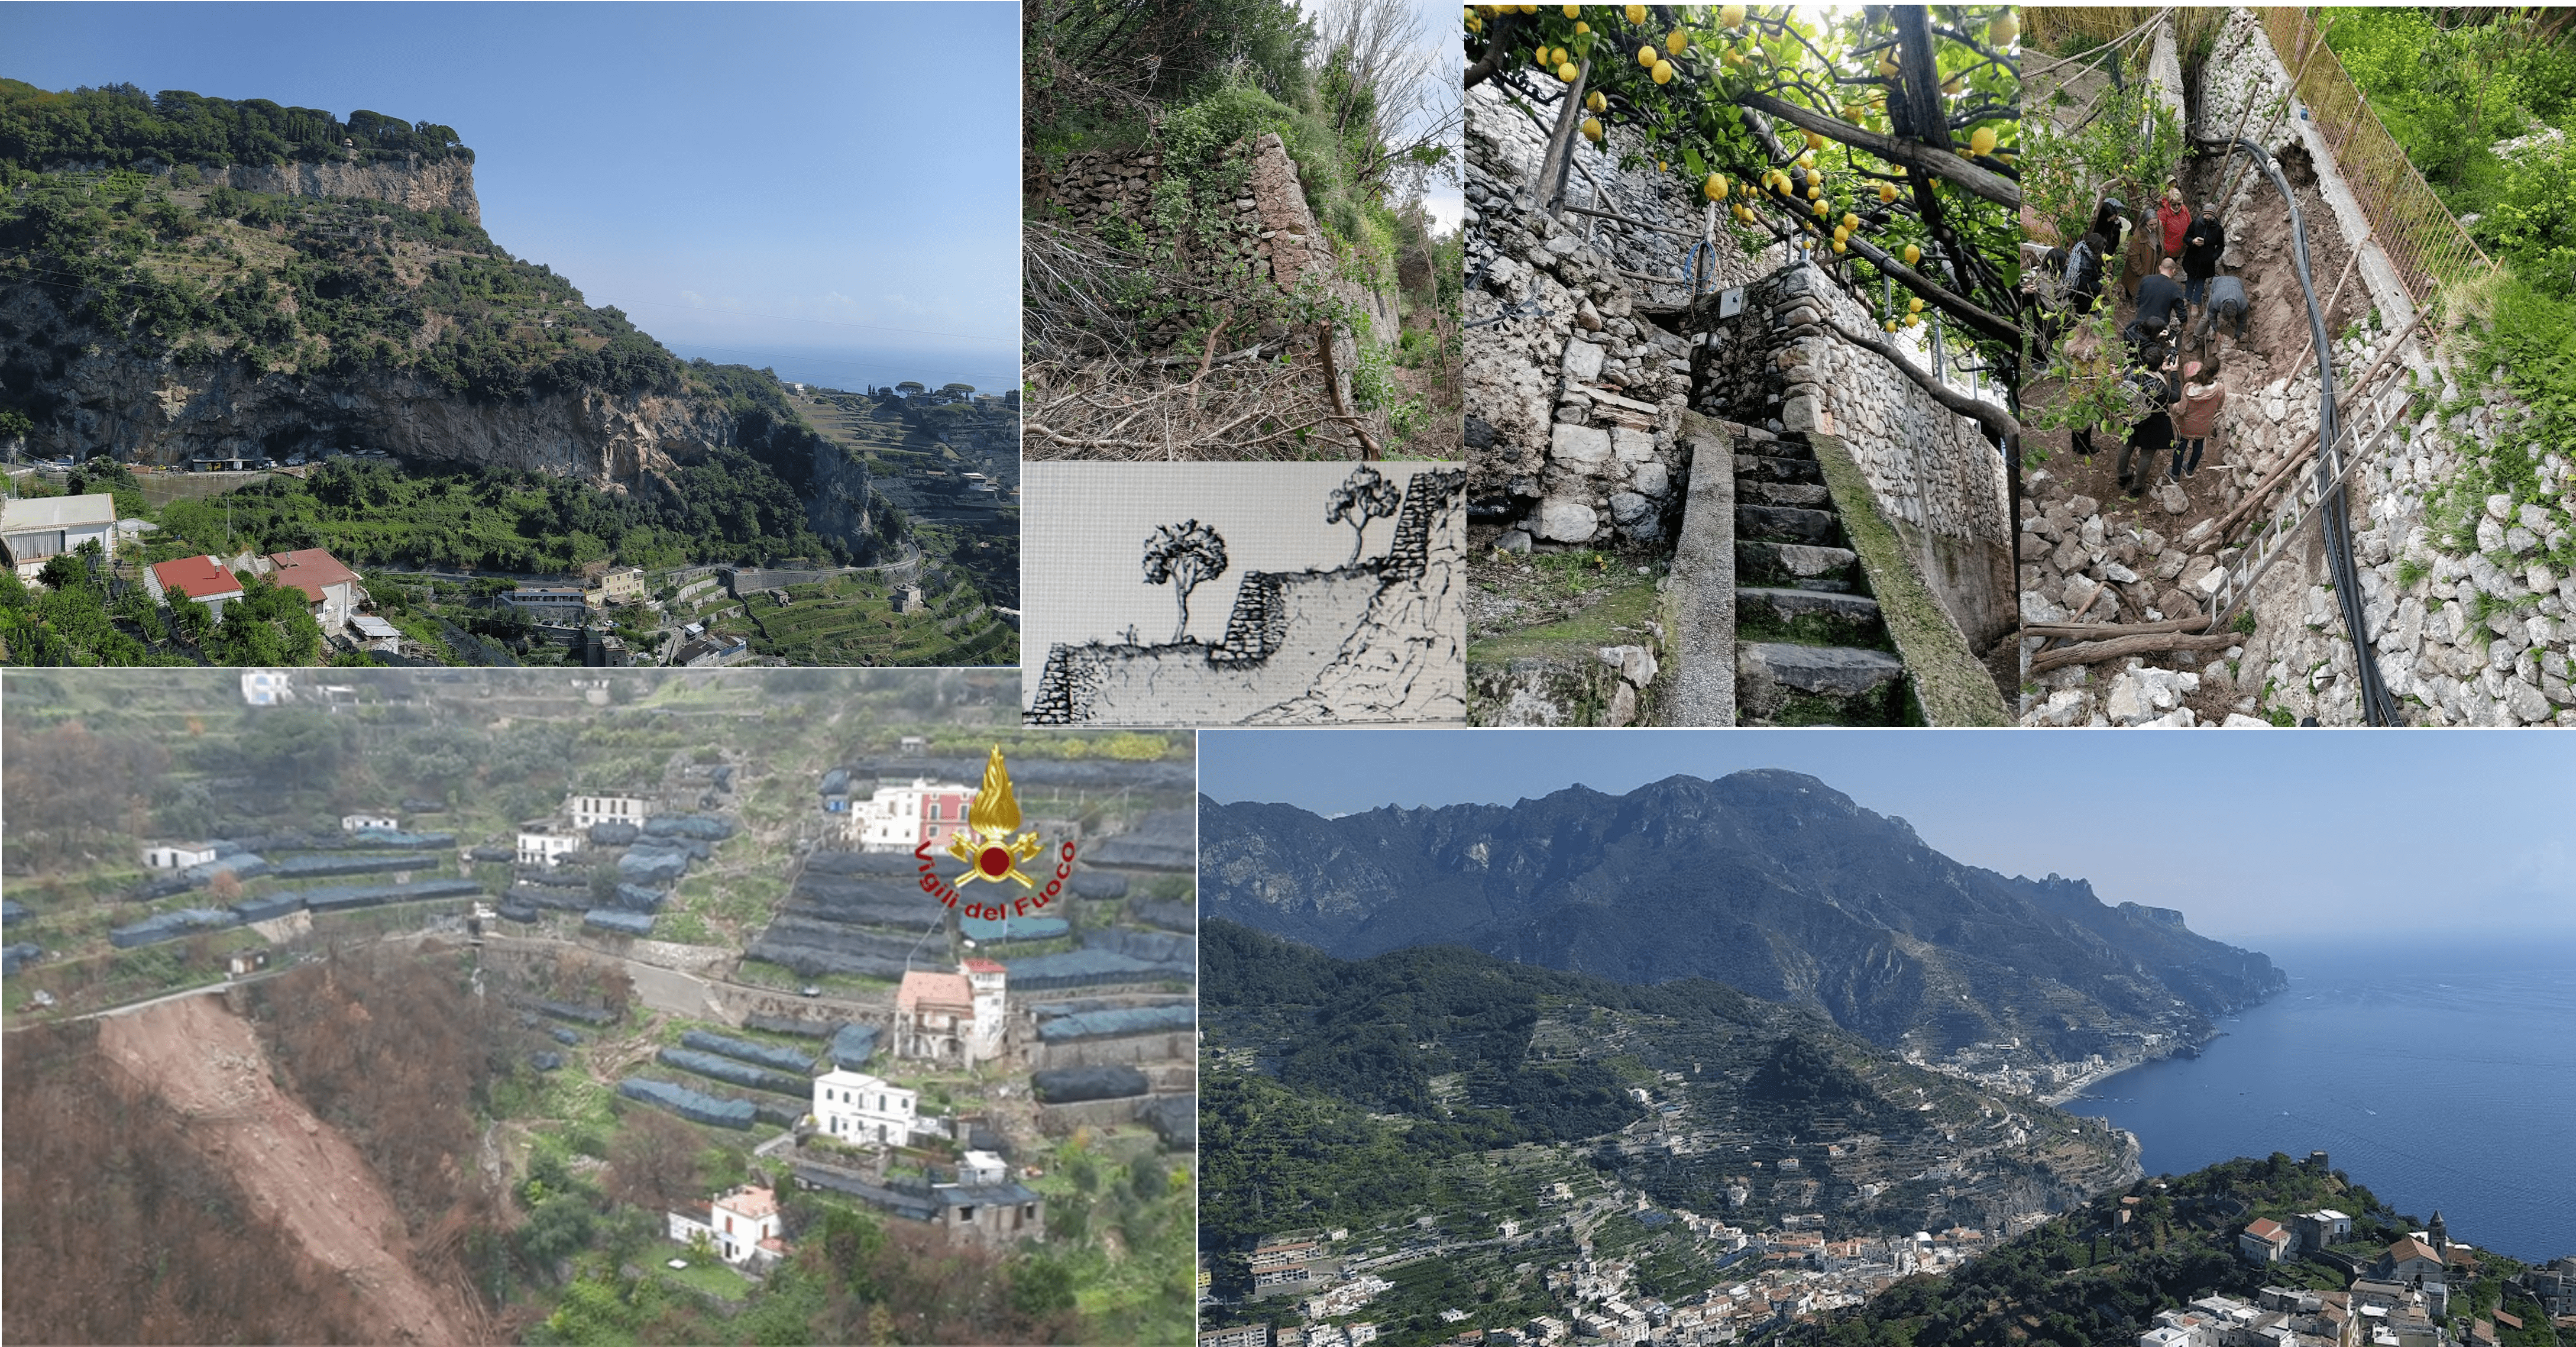 Fenomeni di dissesto idrogeologico in Costiera amalfitana: stato dei pendii terrazzati e diffusione dell’agricoltura eroica